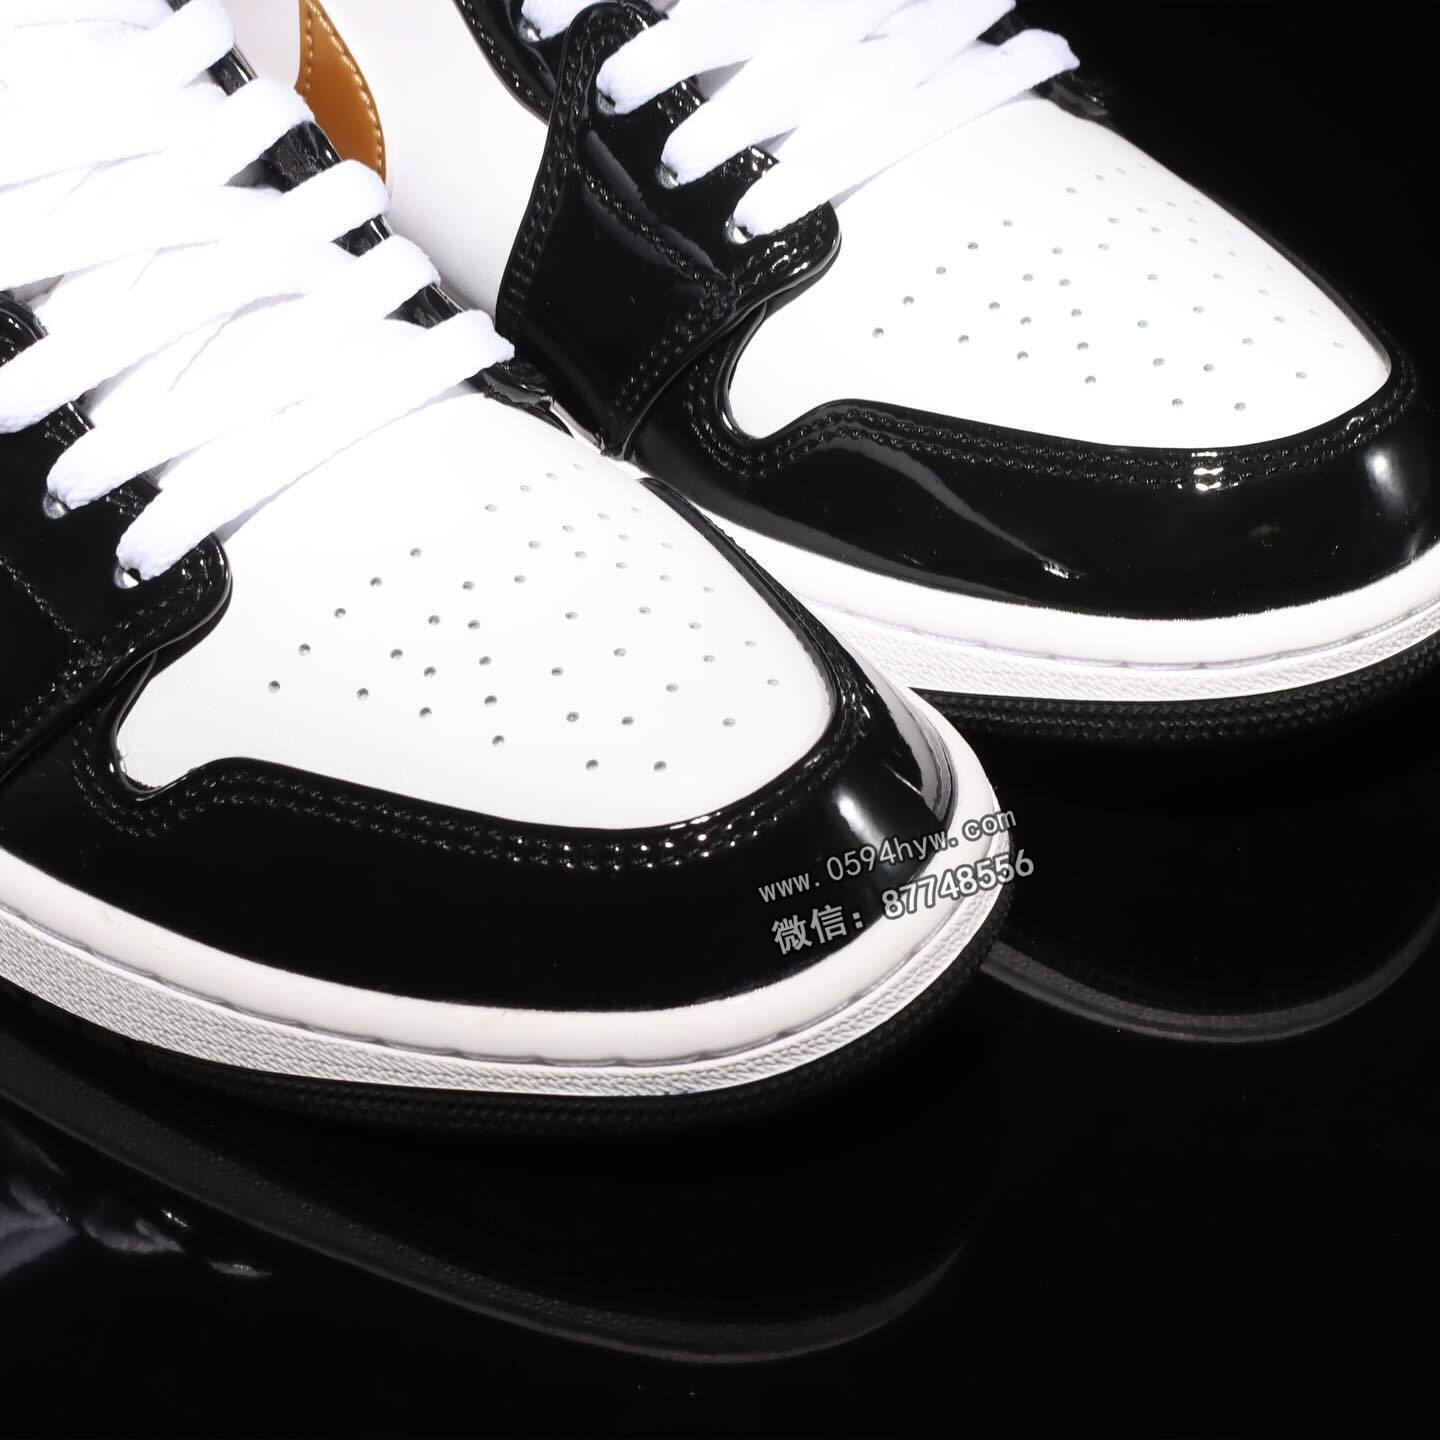 高帮, 篮球鞋, Aj1, AJ, Air Jordan 1 Mid, Air Jordan, 852542-007 - 独具风采的"黑金脚趾"鞋款AJ1即将于下周登场！